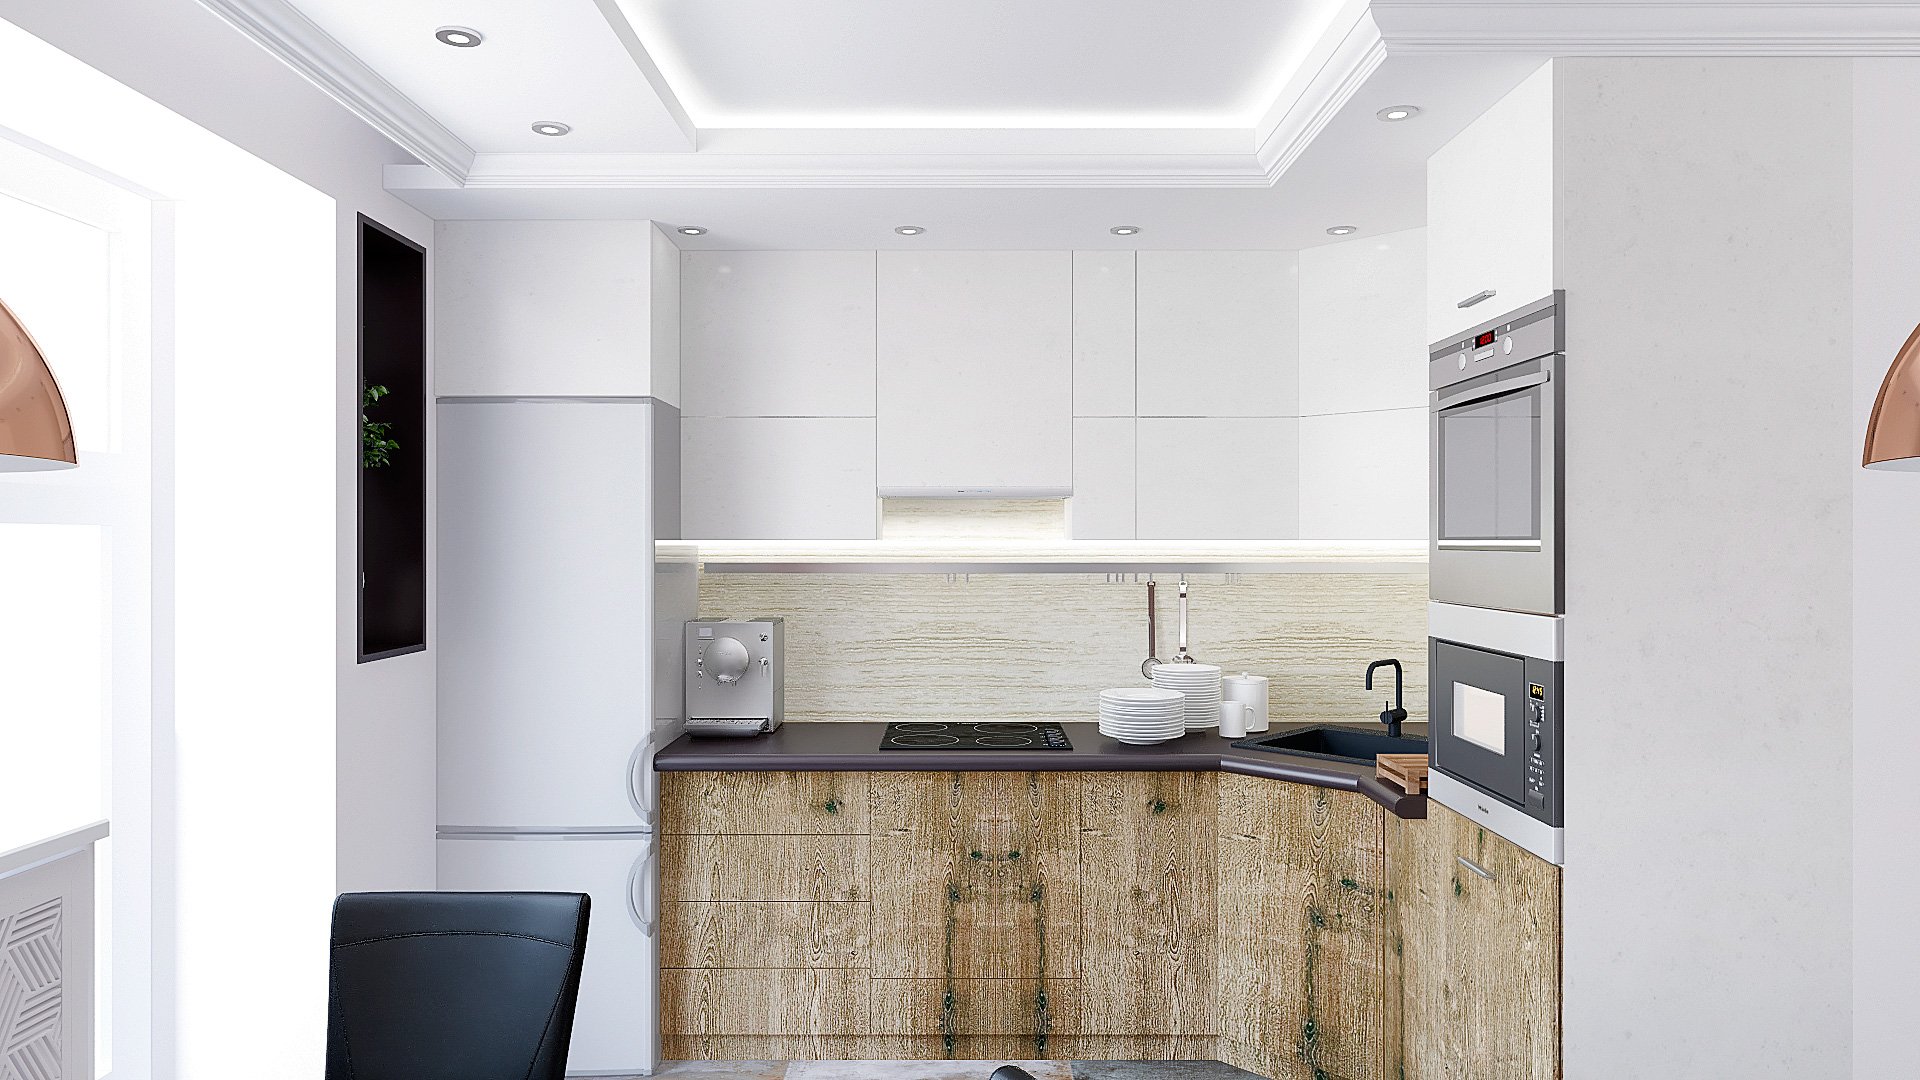 Дизайн интерьера квартиры в Гомеле, Зона кухни-гостиной-прихожая, белый диван, темно-коричневая стена, полки с подсветкой, подвесные светильники, интерьер кухни в гомеле в современном стиле №3